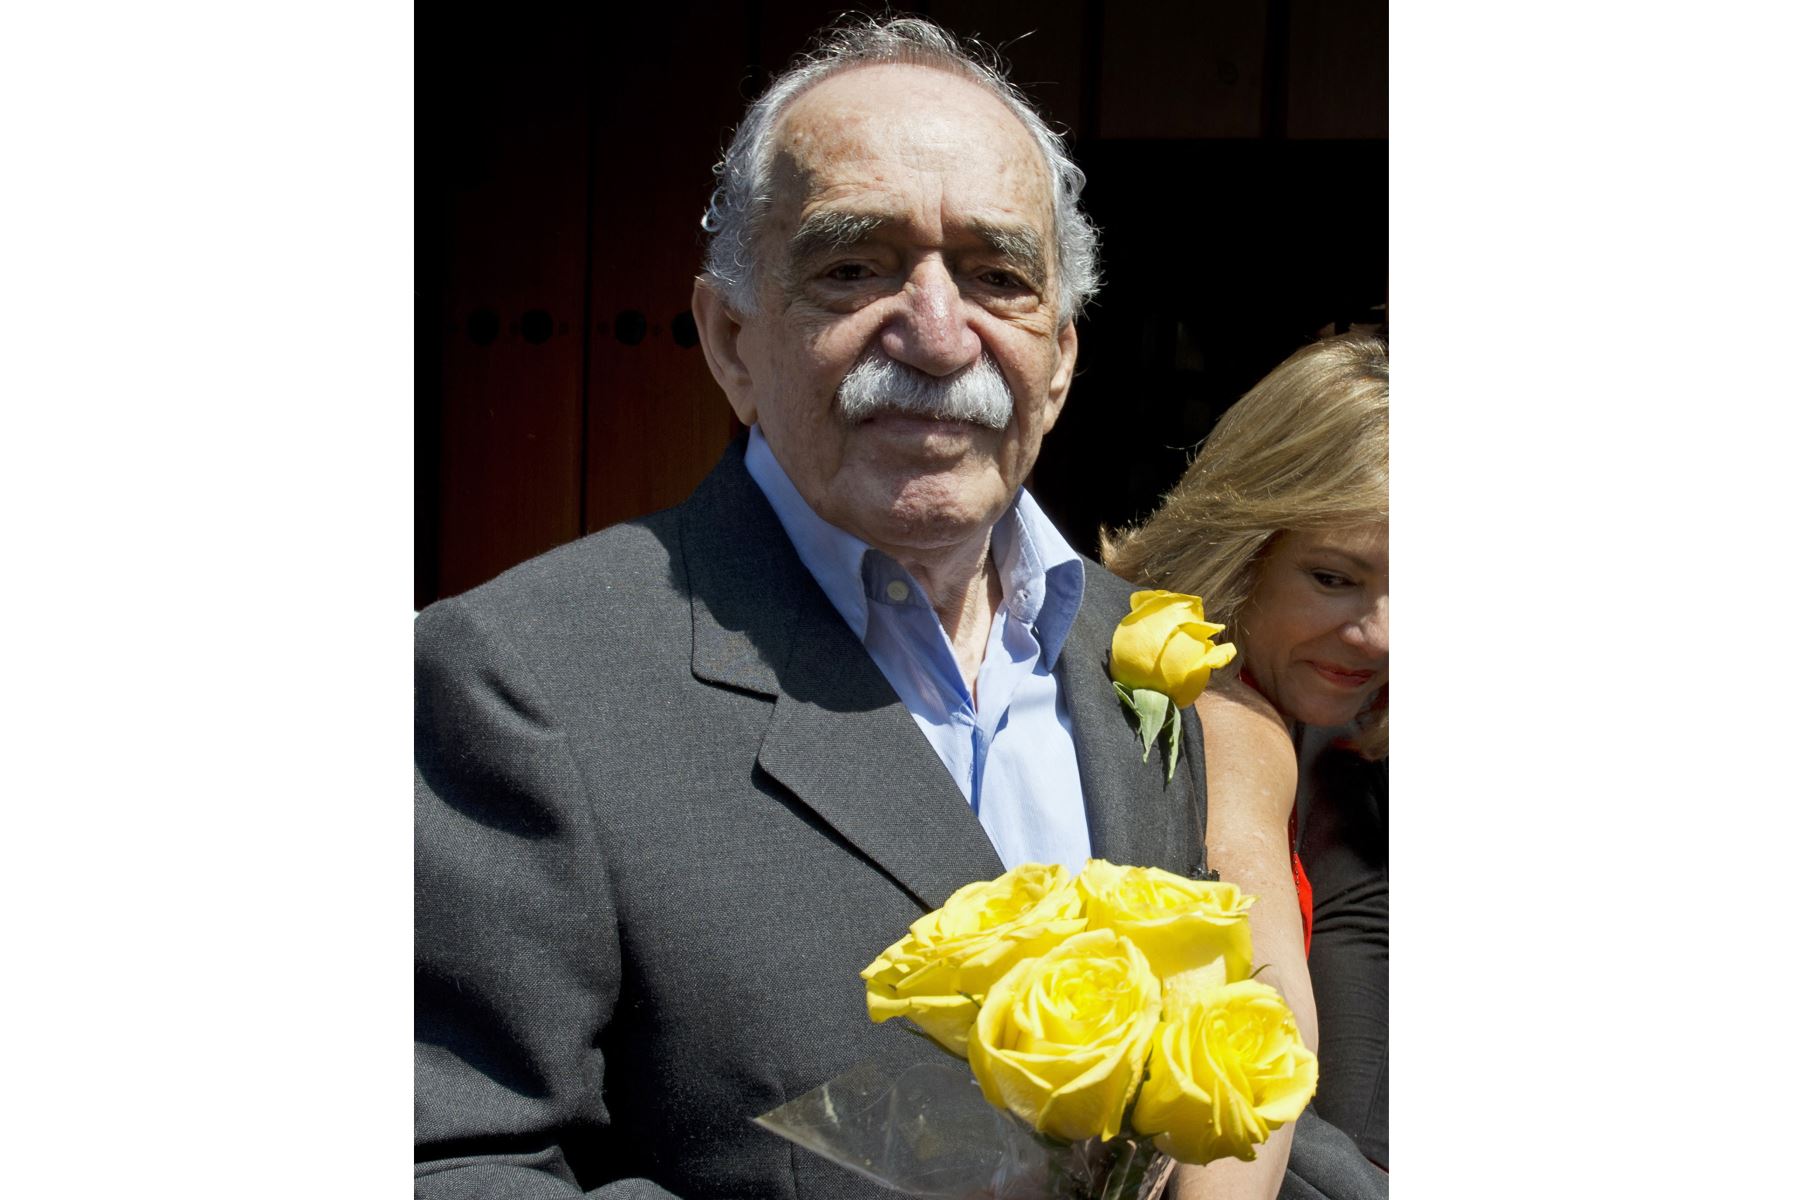 El escritor y periodista colombiano Gabriel García Márquez, premio Nobel de Literatura, posa con un ramo de rosas amarillas que le regaló un periodista en su 87 cumpleaños, en Ciudad de México, el 6 de marzo de 2014. 
Foto: AFP